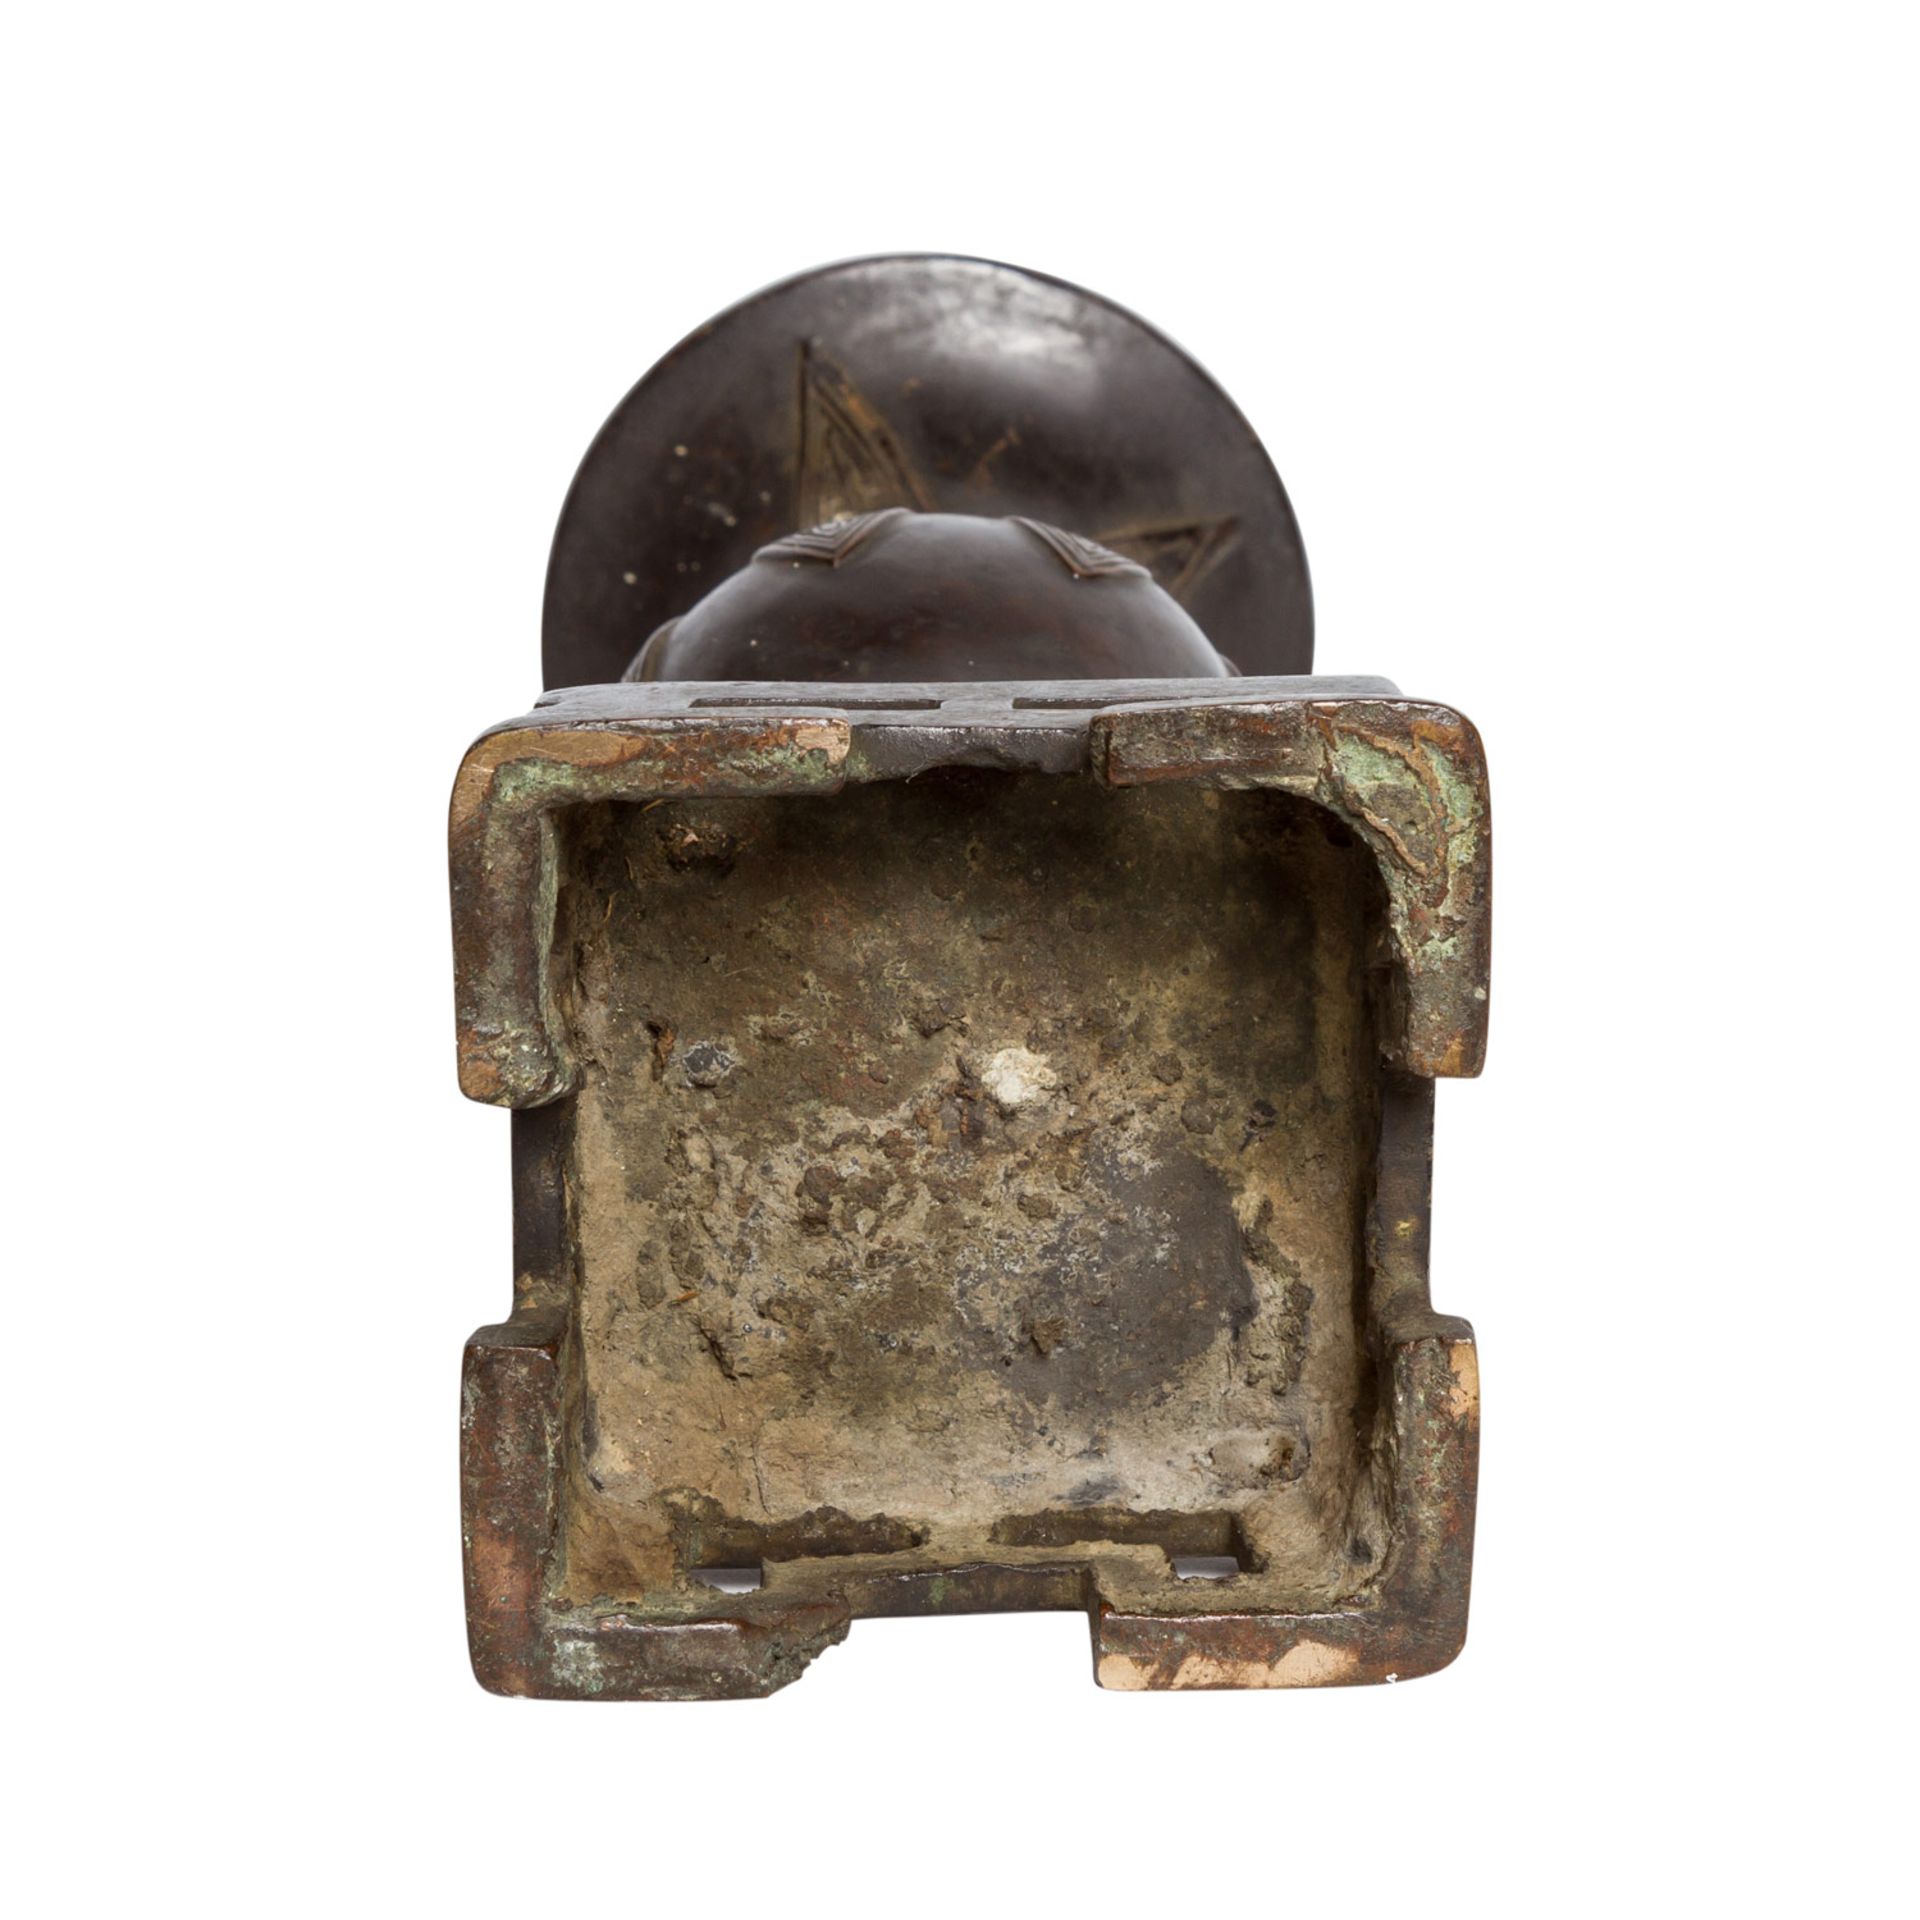 Vase auf mitgegossenem Sockel aus Bronze. CHINA, 18./19. Jh..In Form eines archaischen Bechers vom - Image 7 of 7